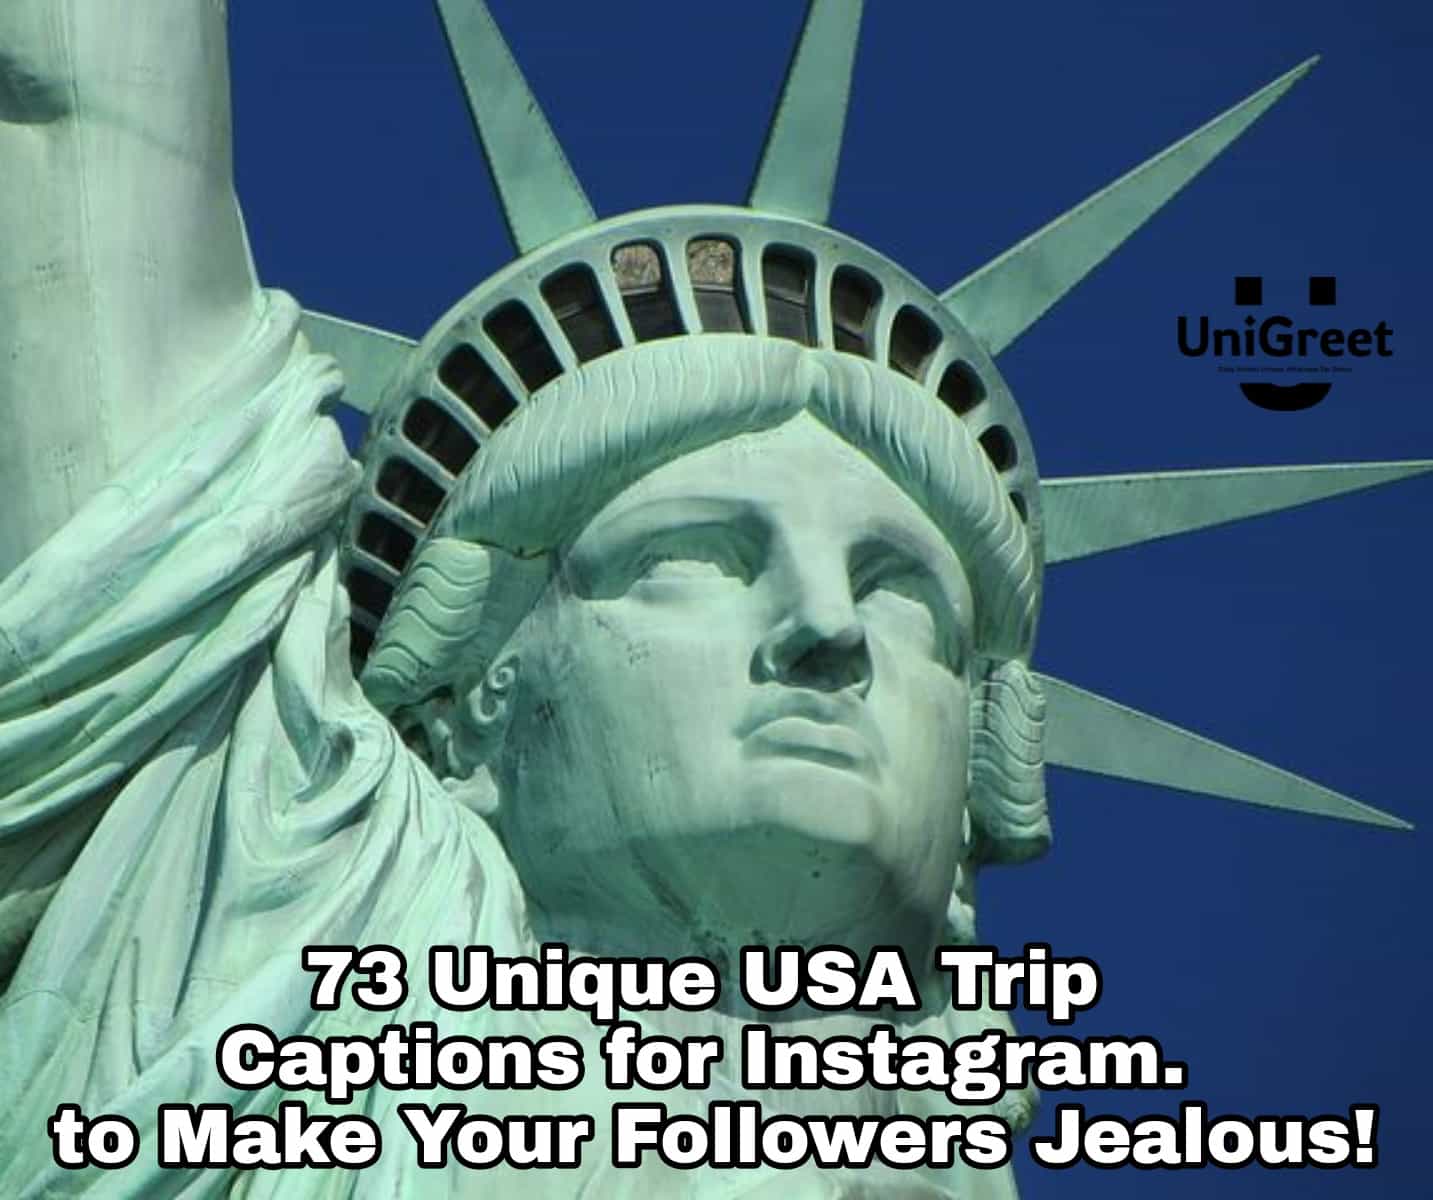 USA Trip Captions for Instagram